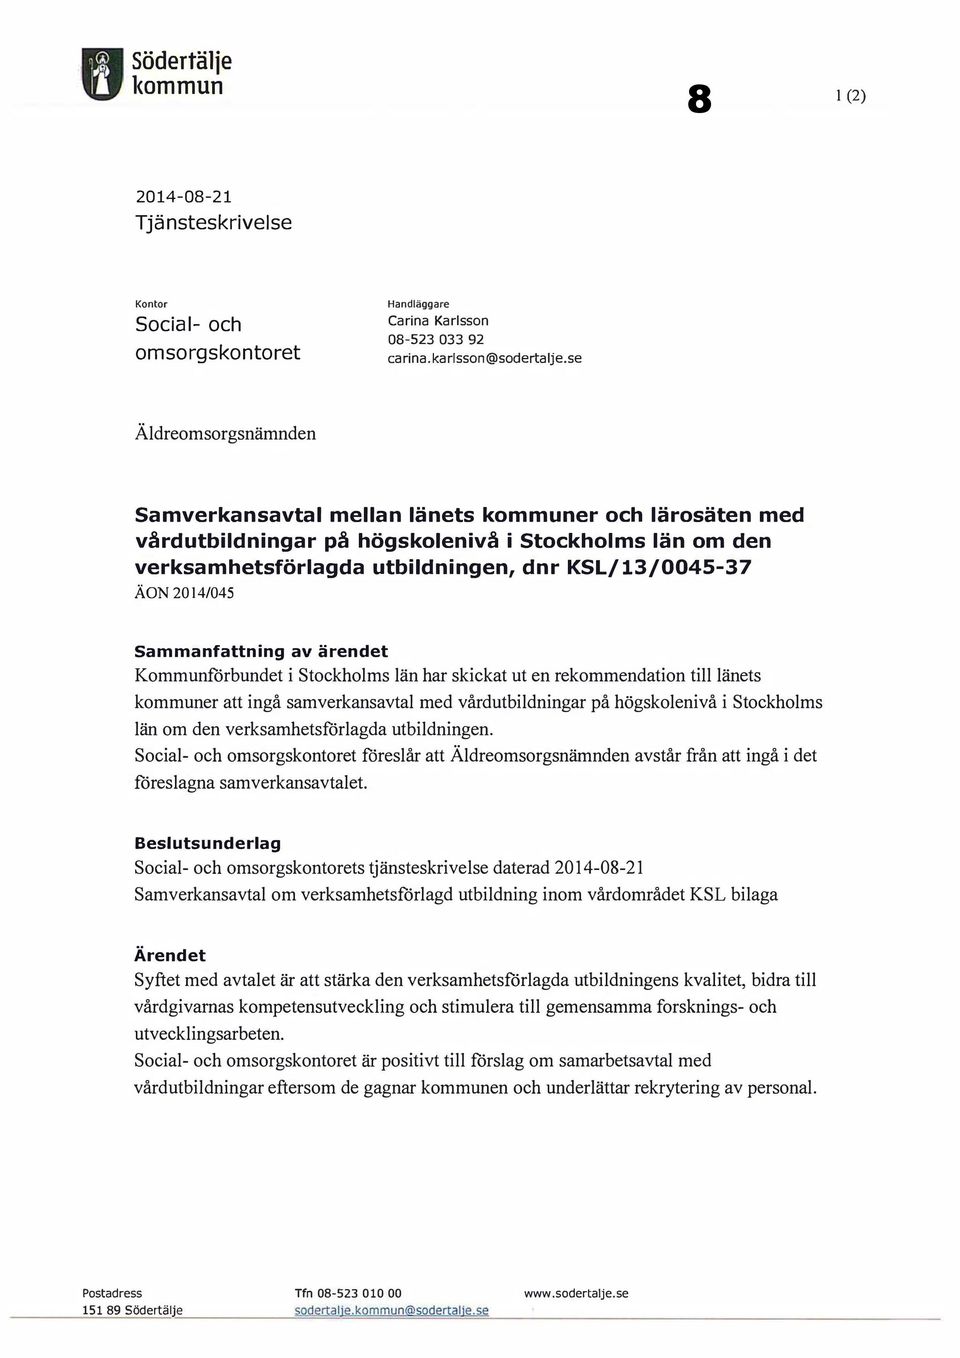 2014/045 Sammanfattning av ärendet Kommunforbundet i Stockholms län har skickat ut en rekommendation till länets kommuner att ingå samverkansavtal med vårdutbildningar på högskolenivå i Stockholms